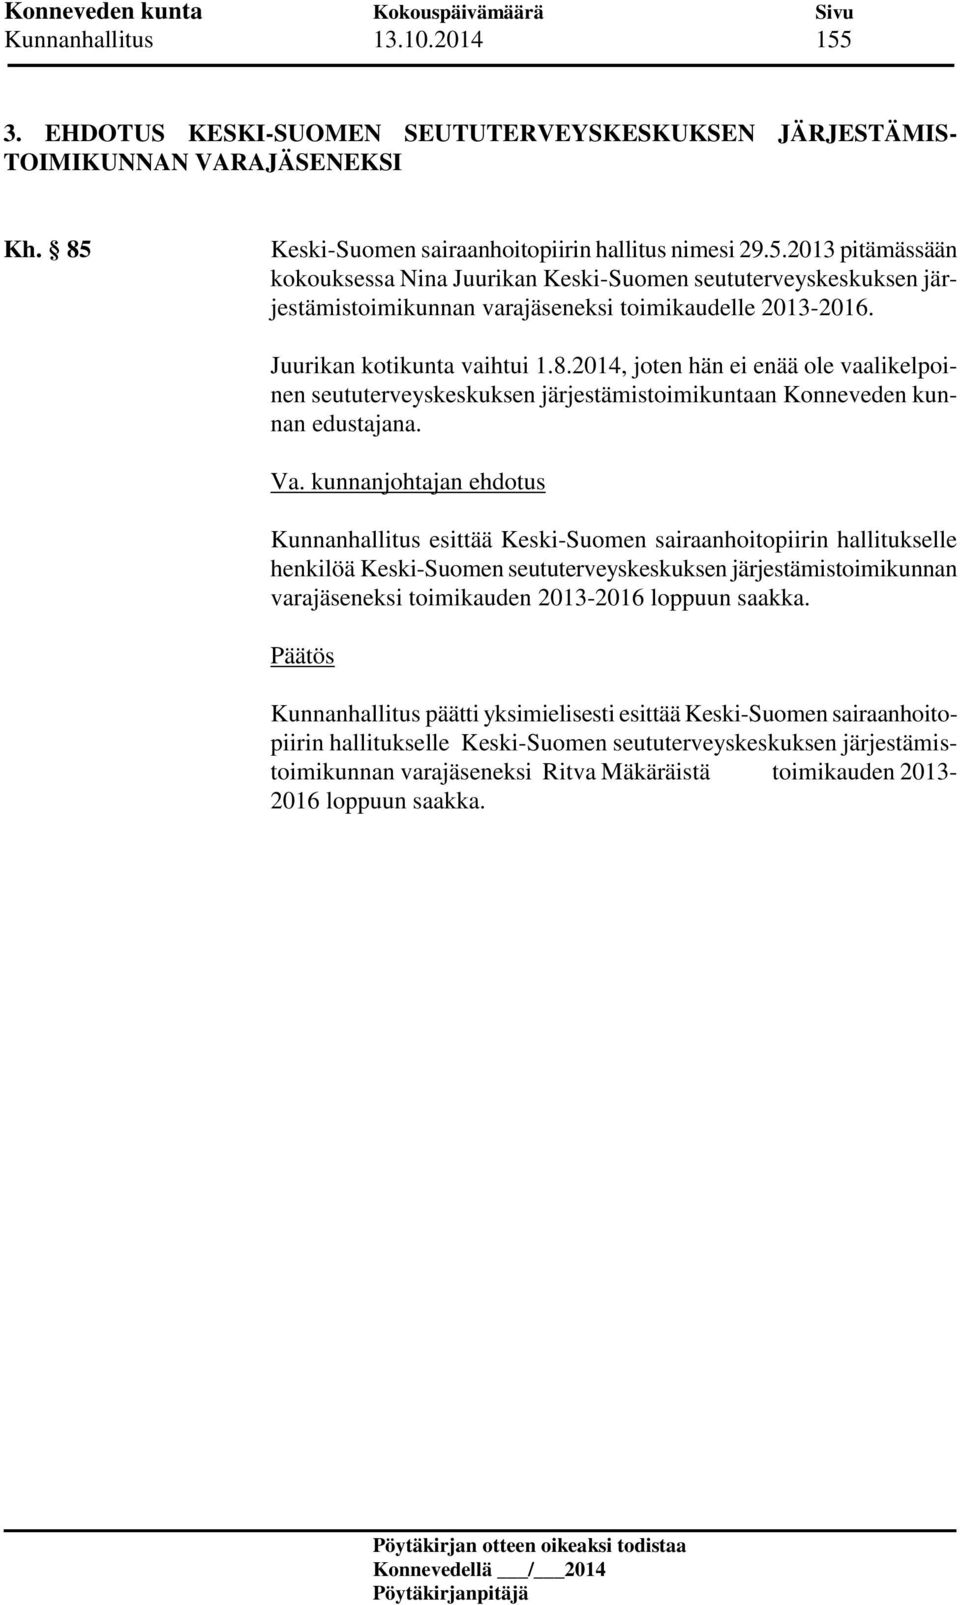 Kunnanhallitus esittää Keski-Suomen sairaanhoitopiirin hallitukselle henkilöä Keski-Suomen seututerveyskeskuksen järjestämistoimikunnan varajäseneksi toimikauden 2013-2016 loppuun saakka.